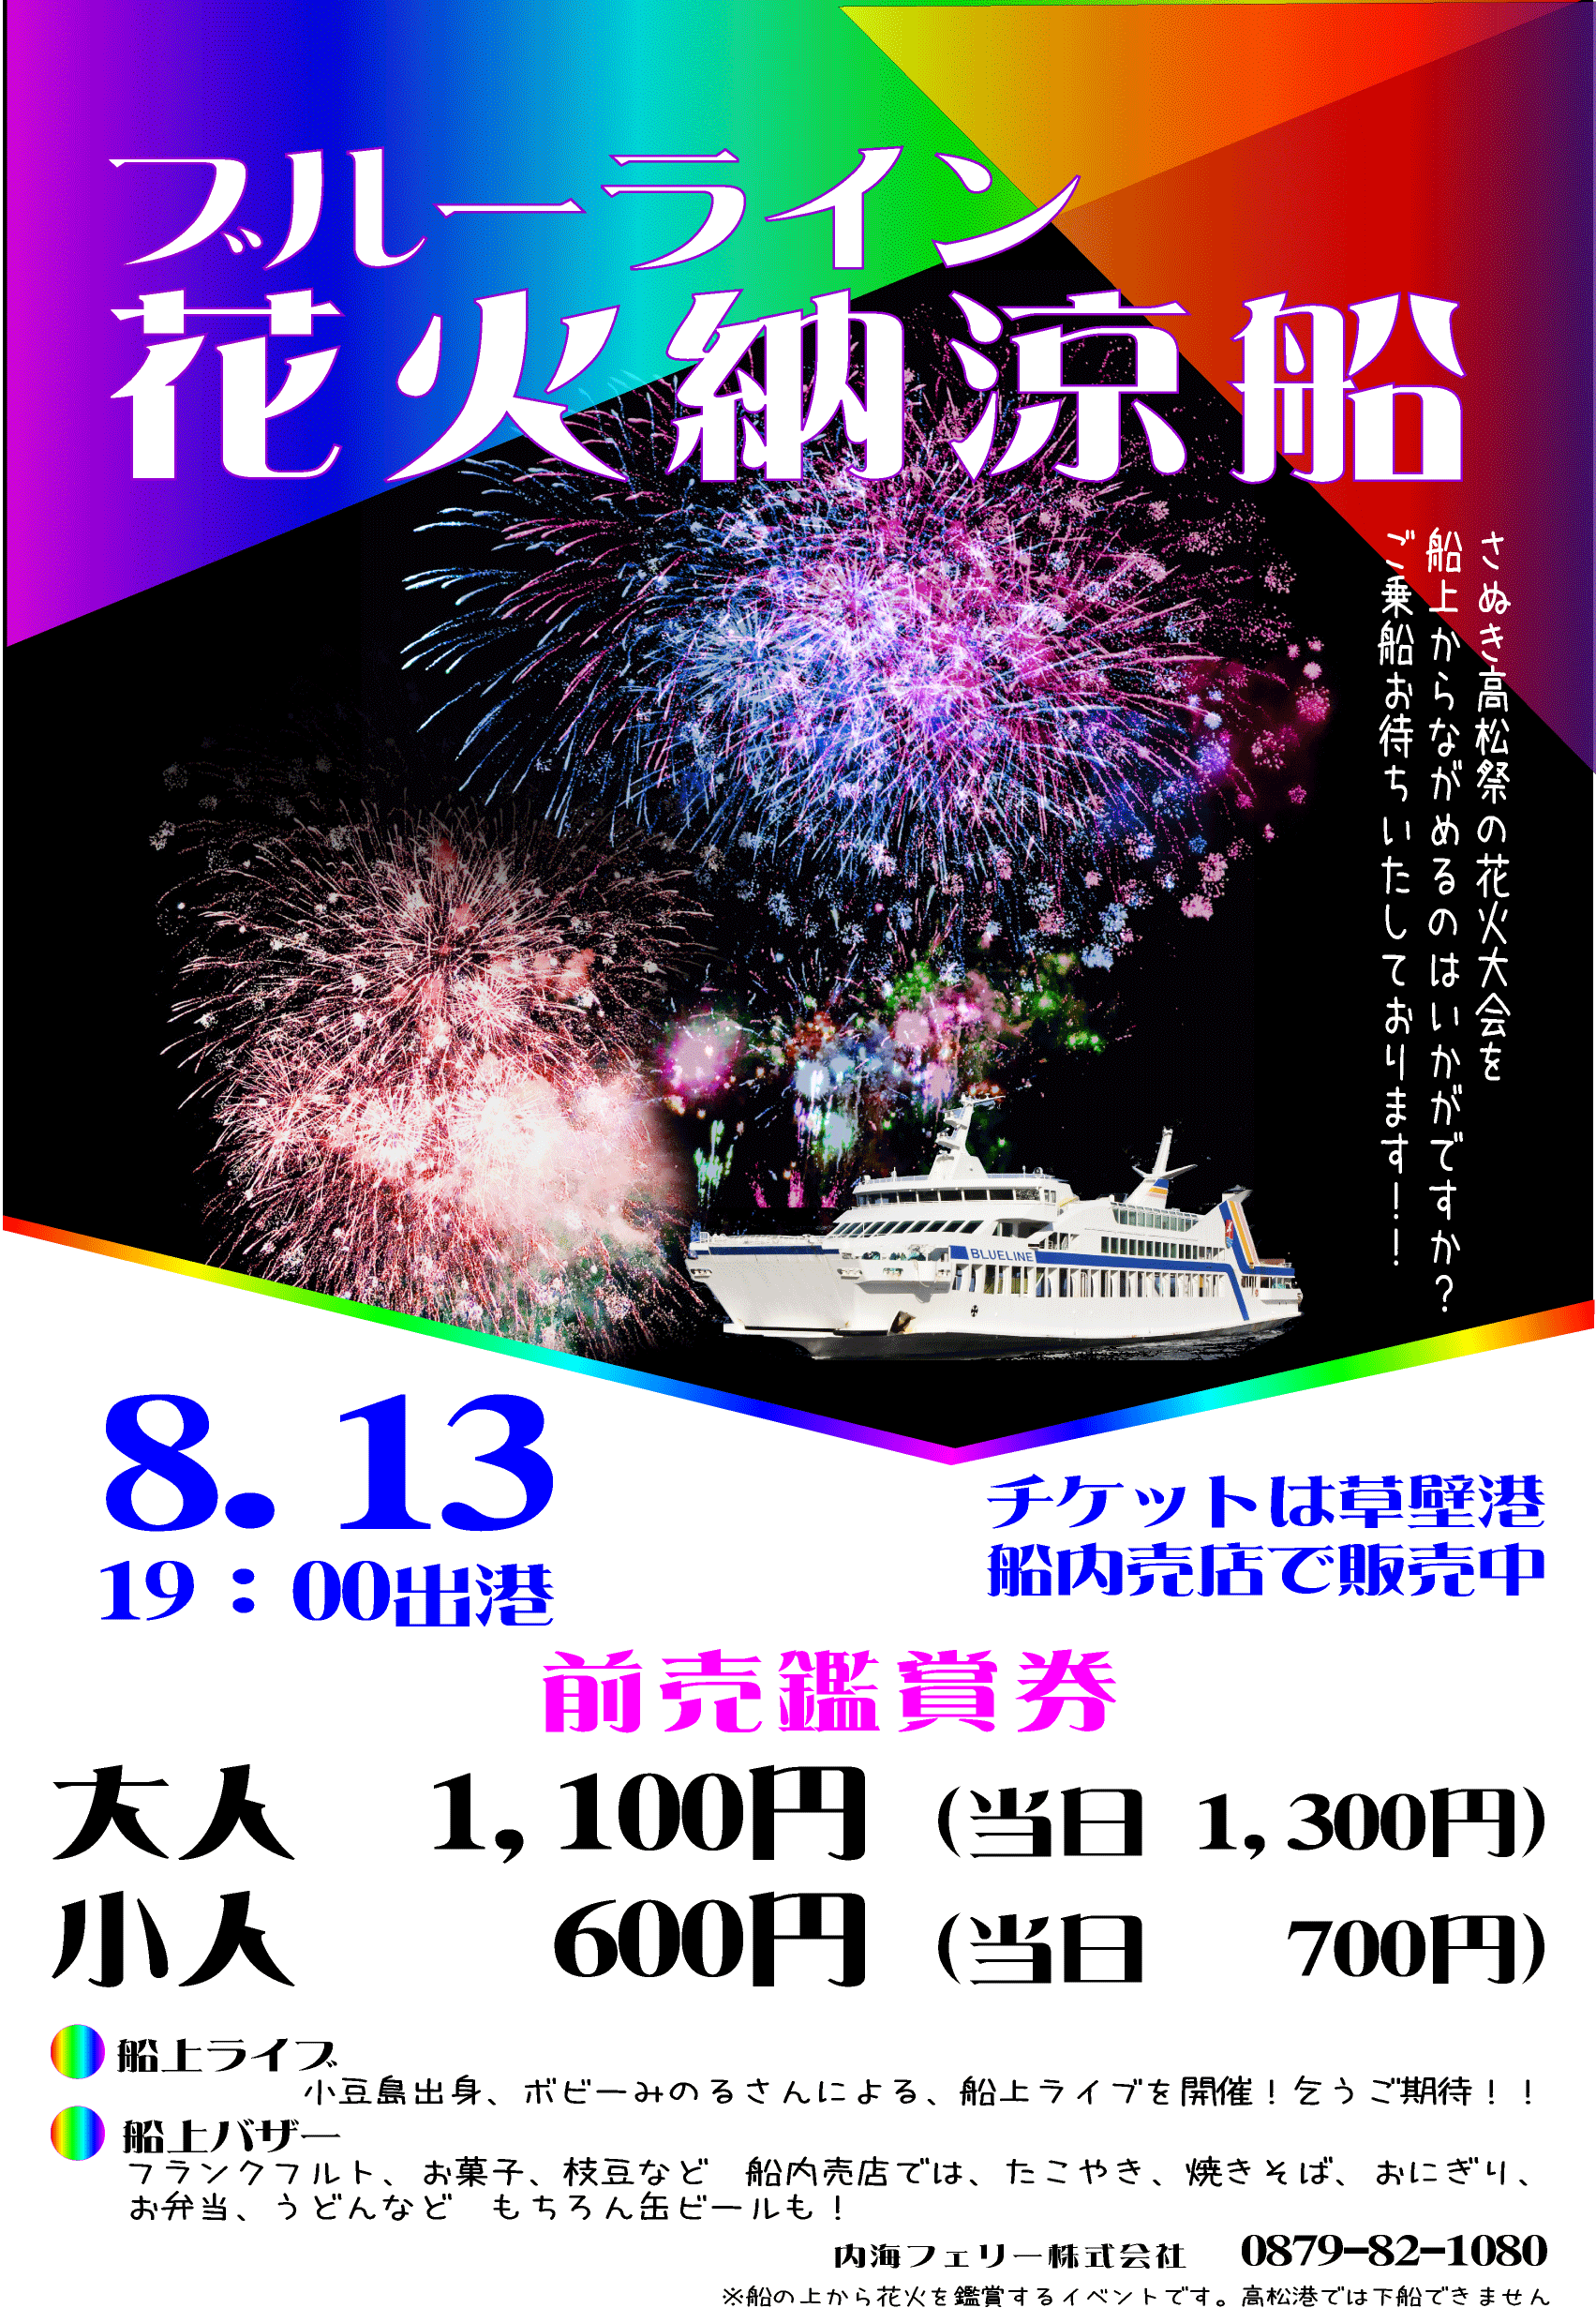 2019年 8/13フェリー(小豆島〜高松)にて船上ライブ